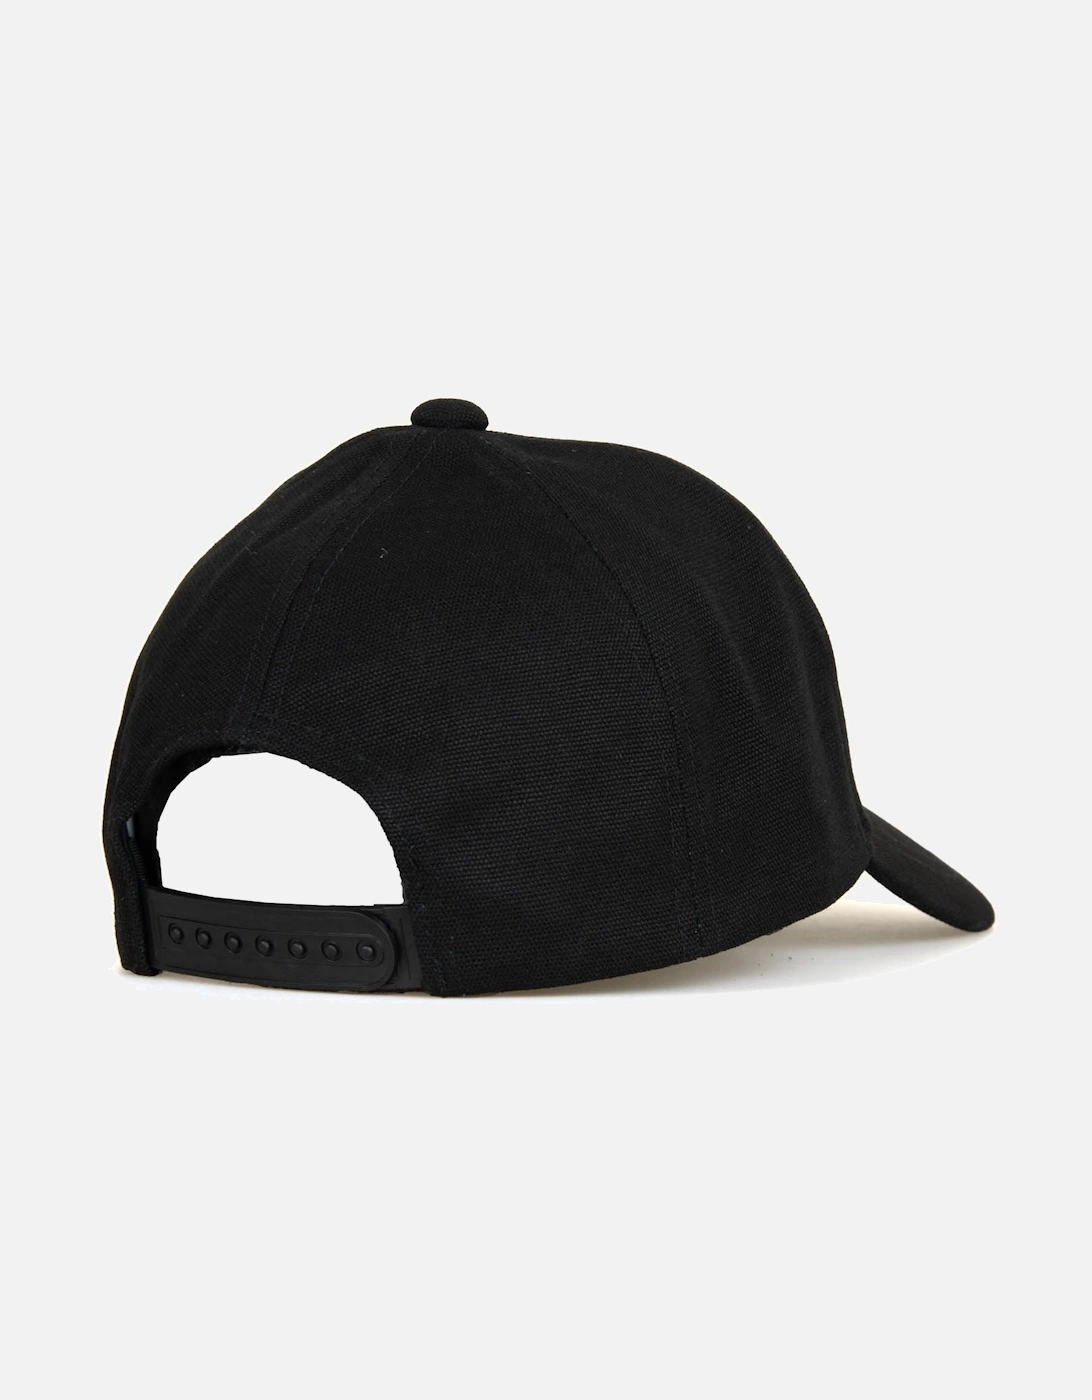 Armani Mens Train Core ID Woven Cap (Black)